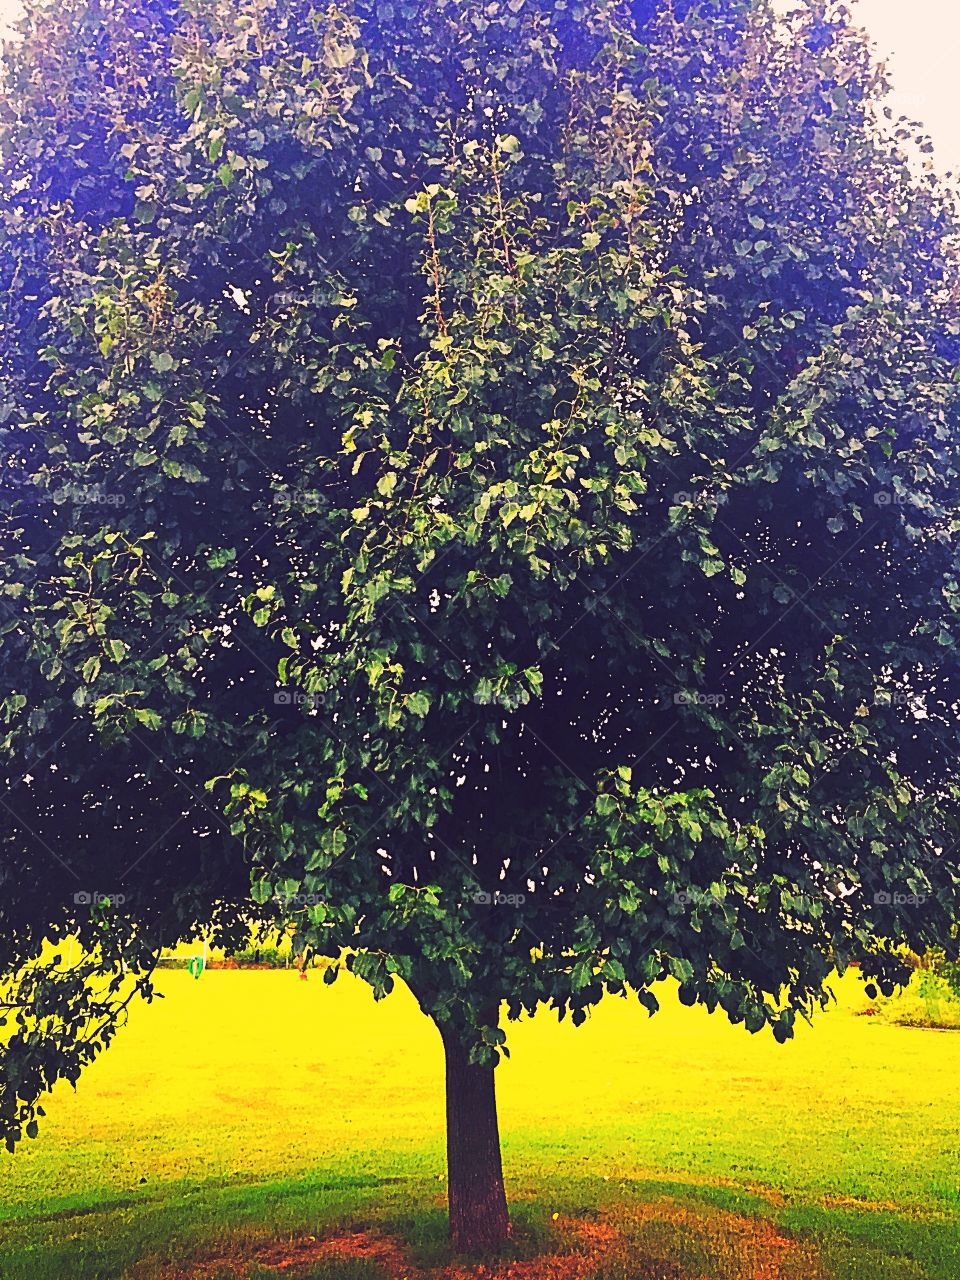 Golden hour tree